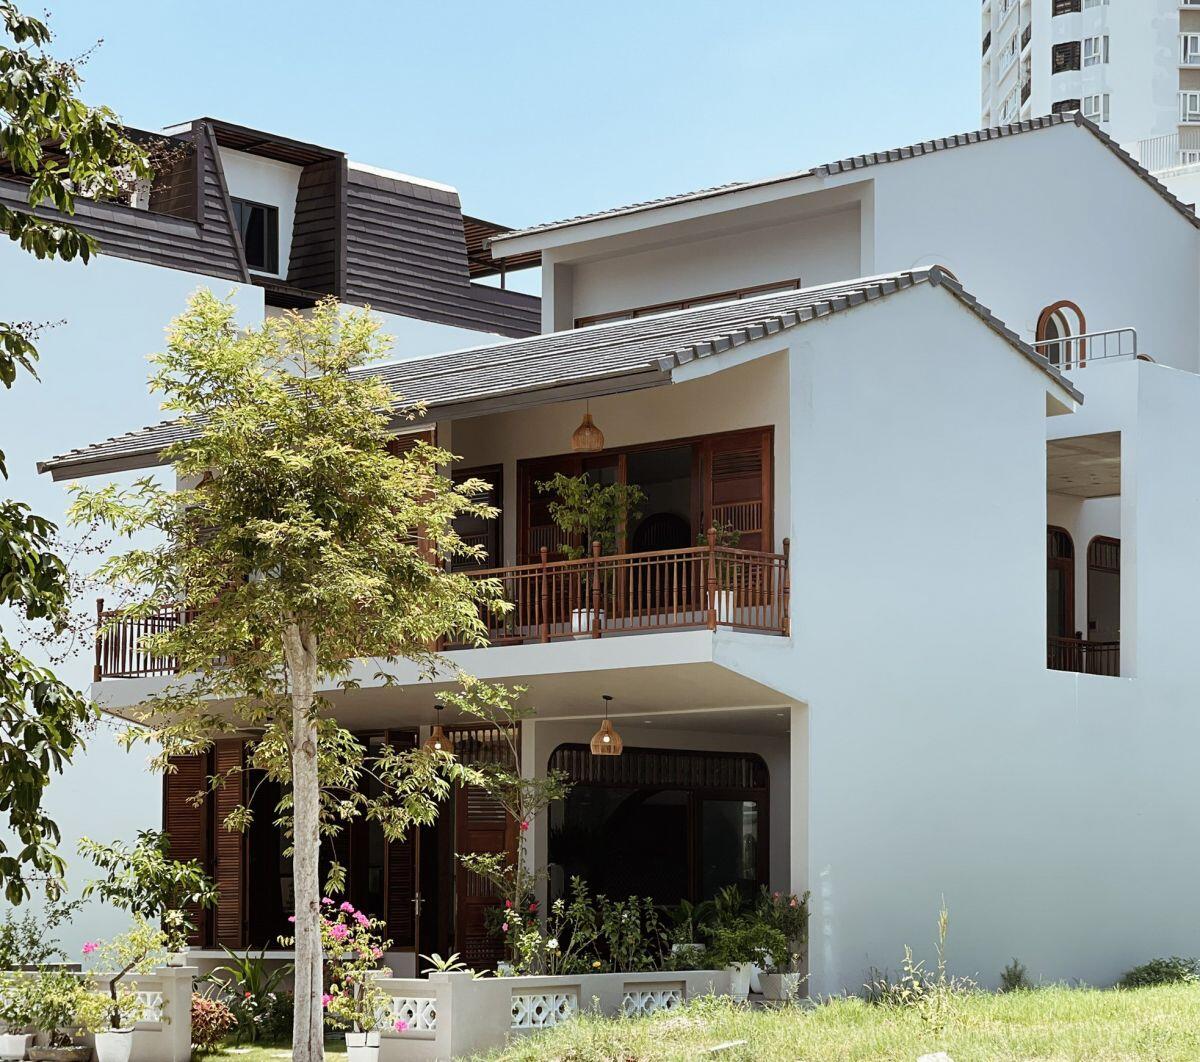 Thiết kế của ngôi nhà theo phong cách kiến trúc Á Đông đương đại, một sự kết hợp hoàn hảo giữa việc kế thừa vẻ đẹp truyền thống và phát huy những tinh hoa của văn hóa hiện đại.